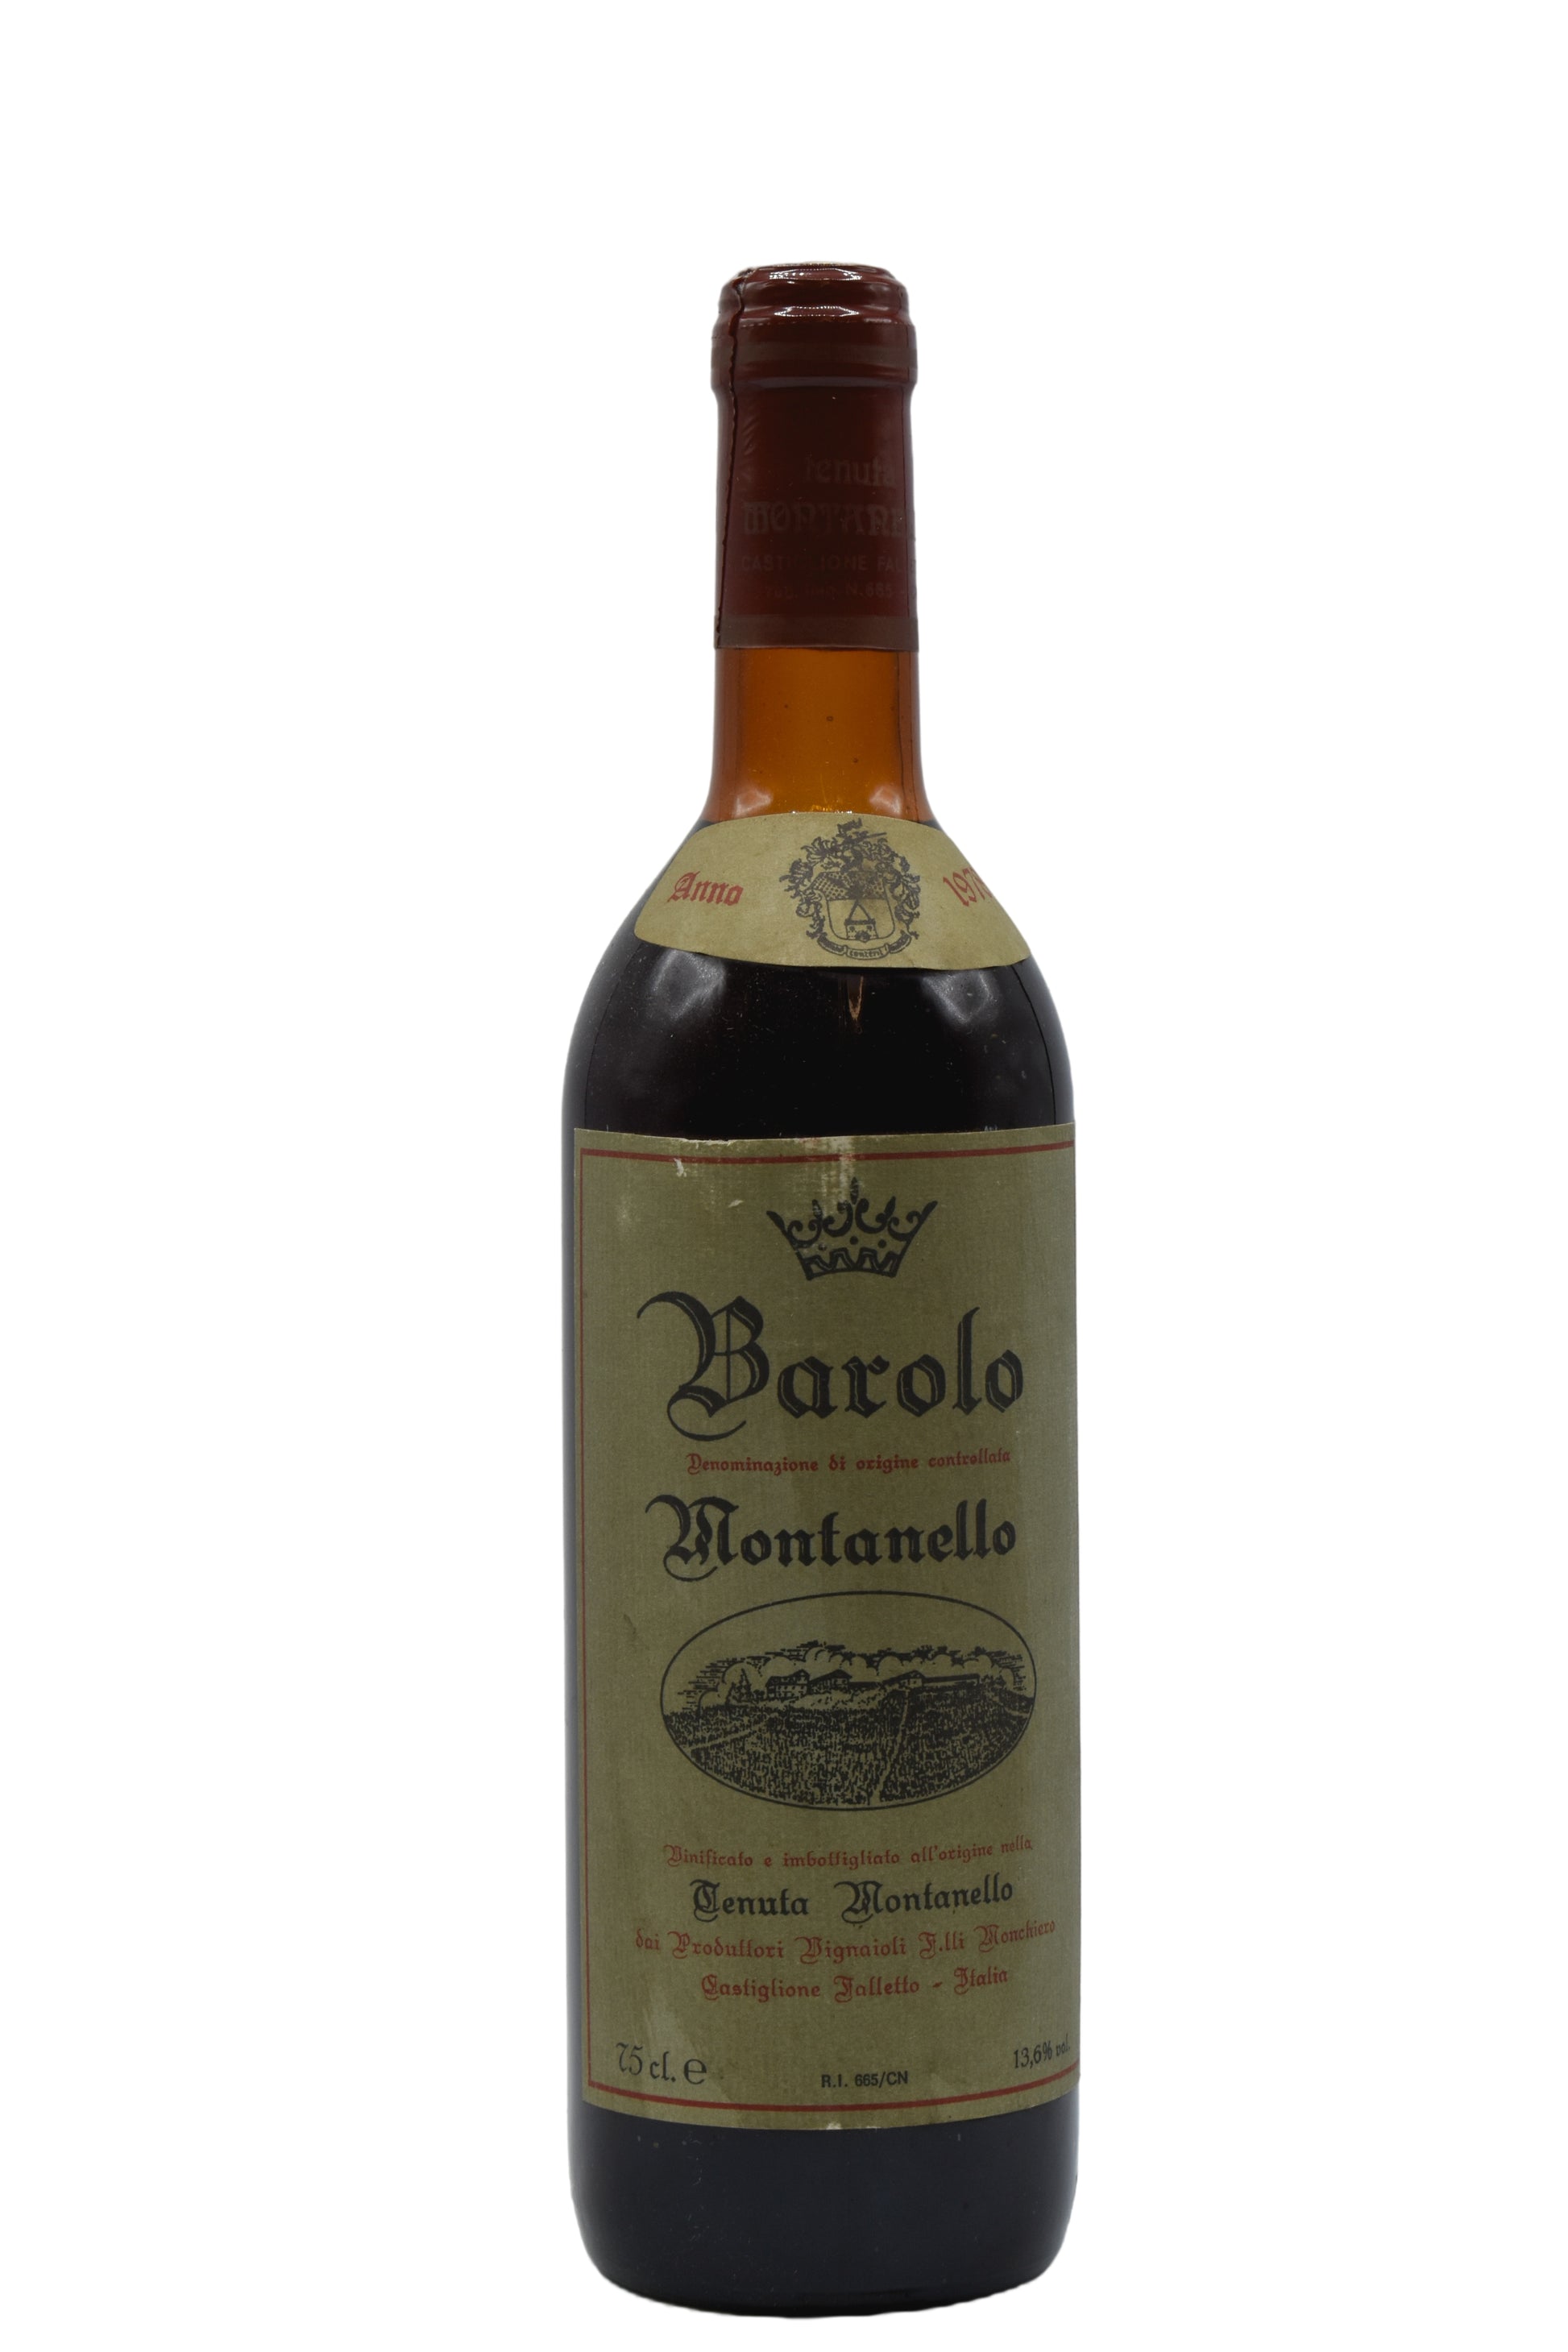 1978 Fratelli Monchiero Barolo Castiglione Falletto  Montanello 750ml - Walker Wine Co.